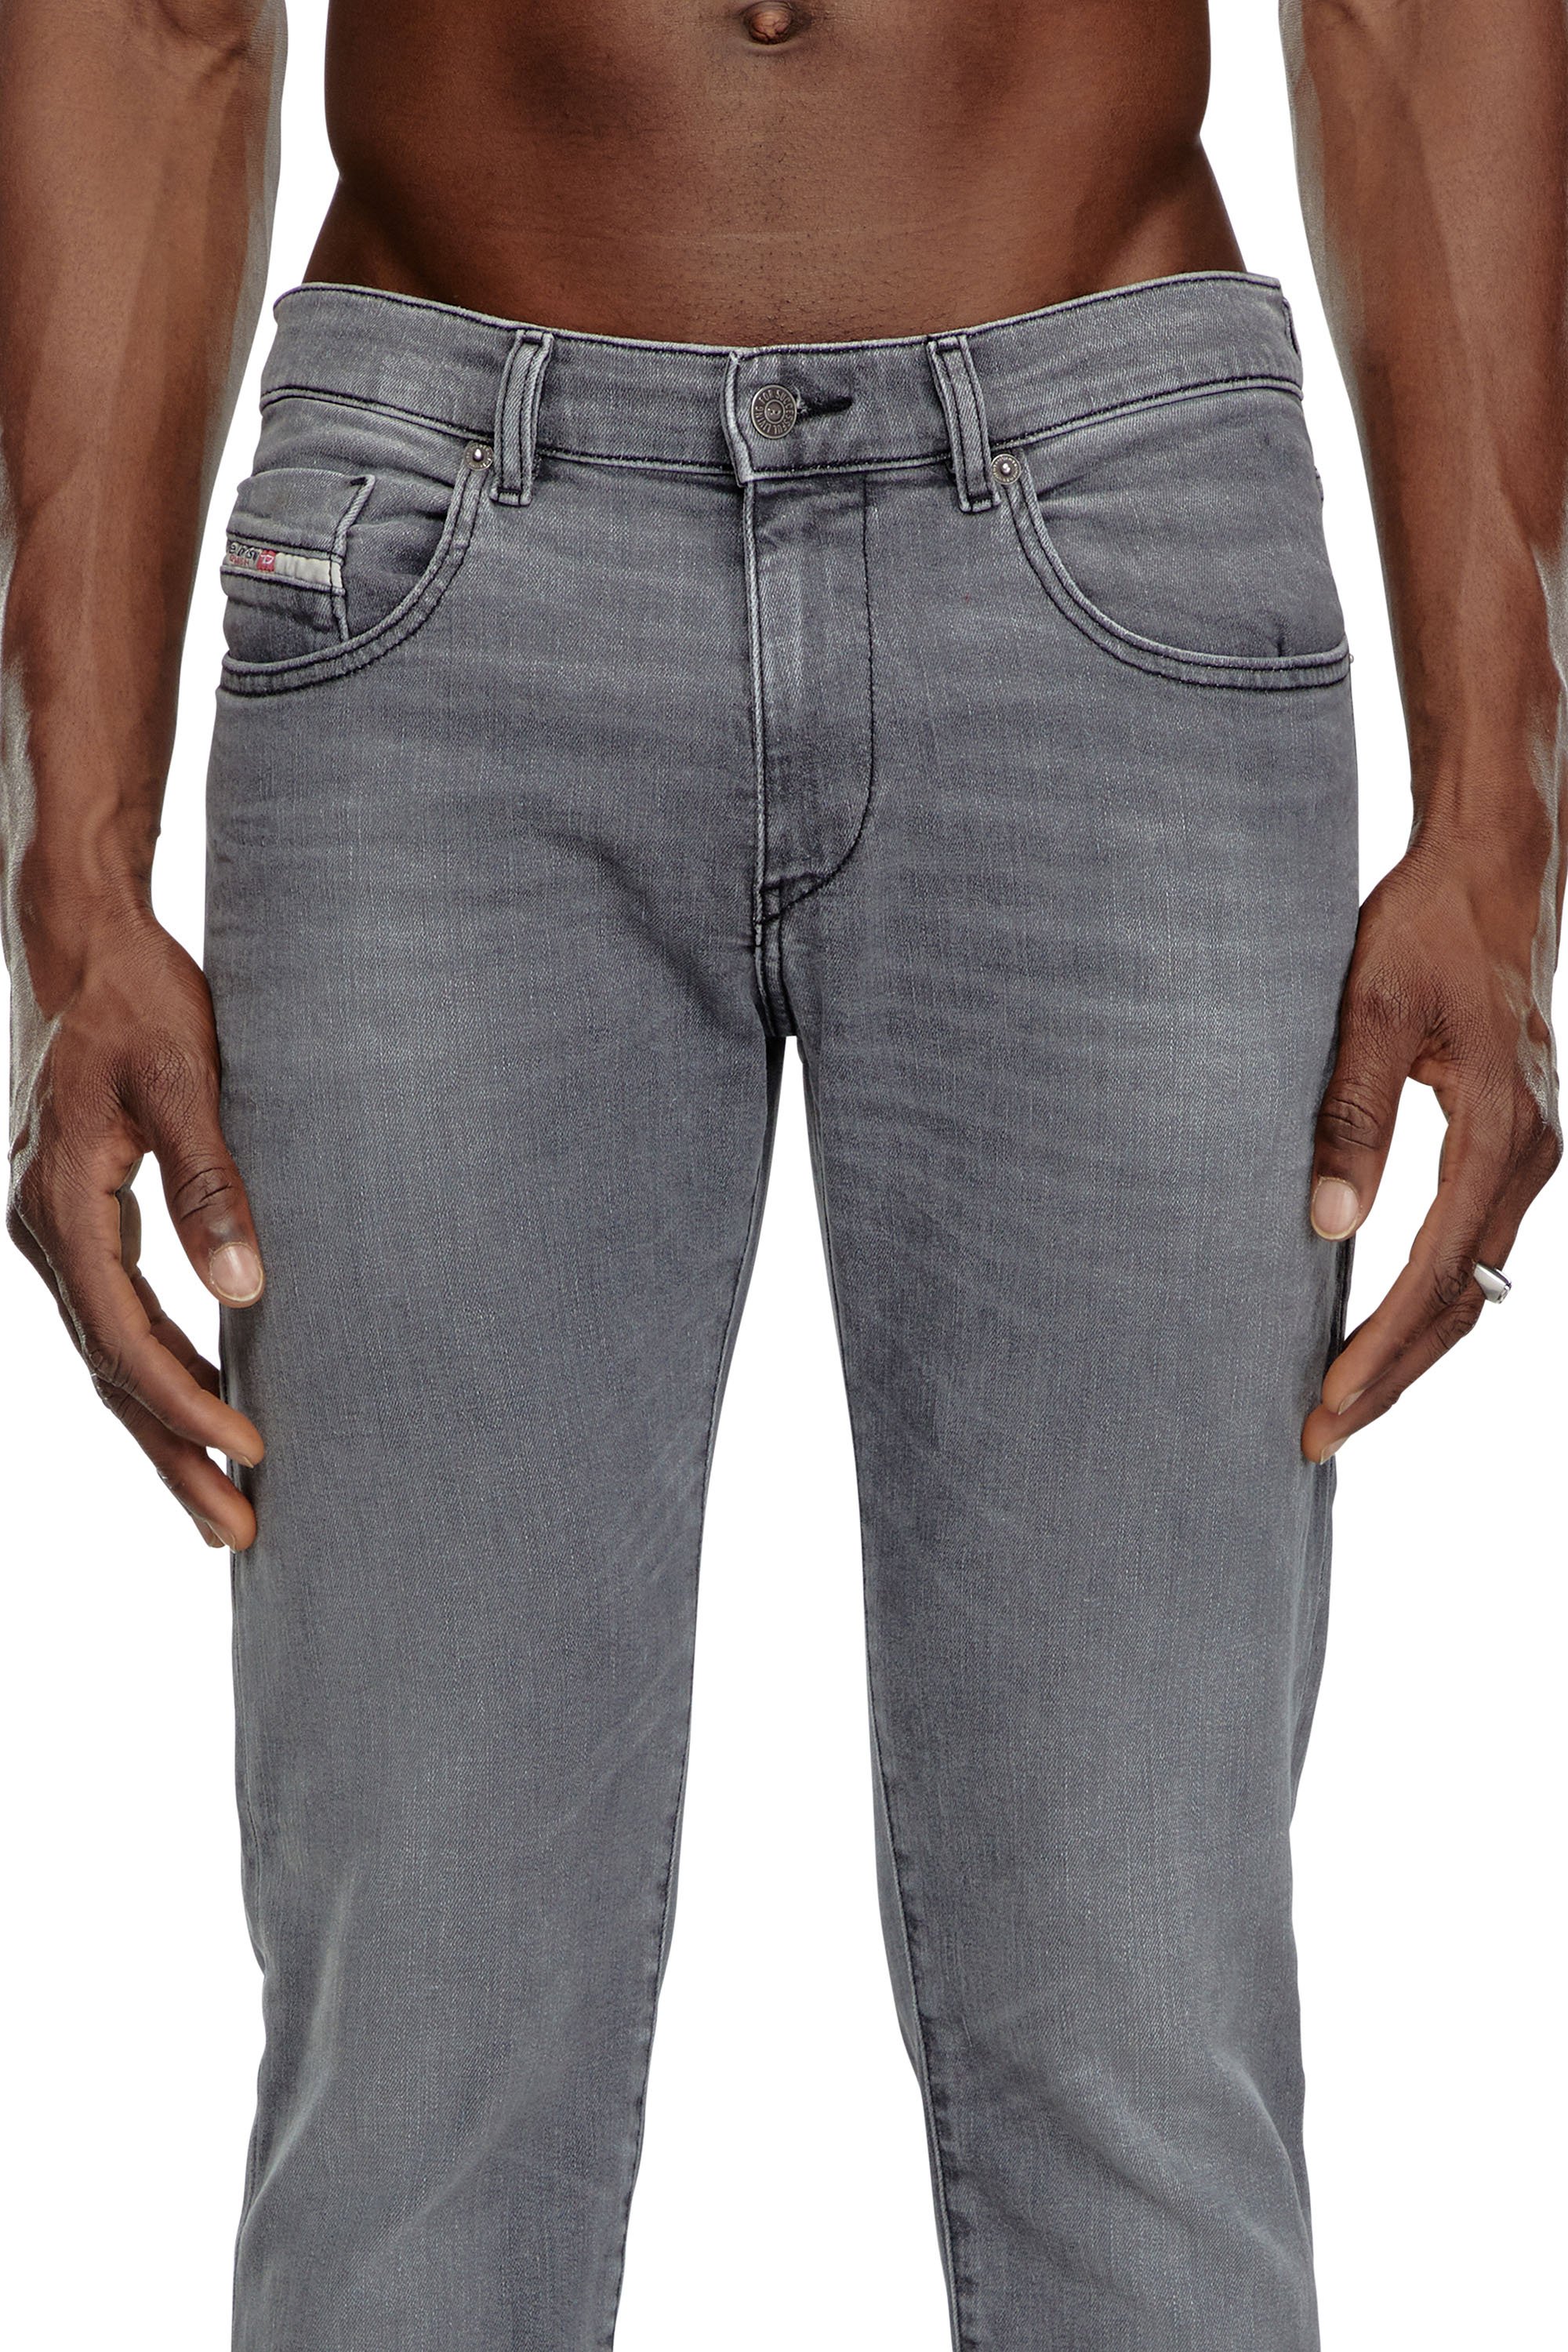 Diesel - Slim Jeans 2019 D-Strukt 0GRDK, Hombre Slim Jeans - 2019 D-Strukt in Gris - Image 5